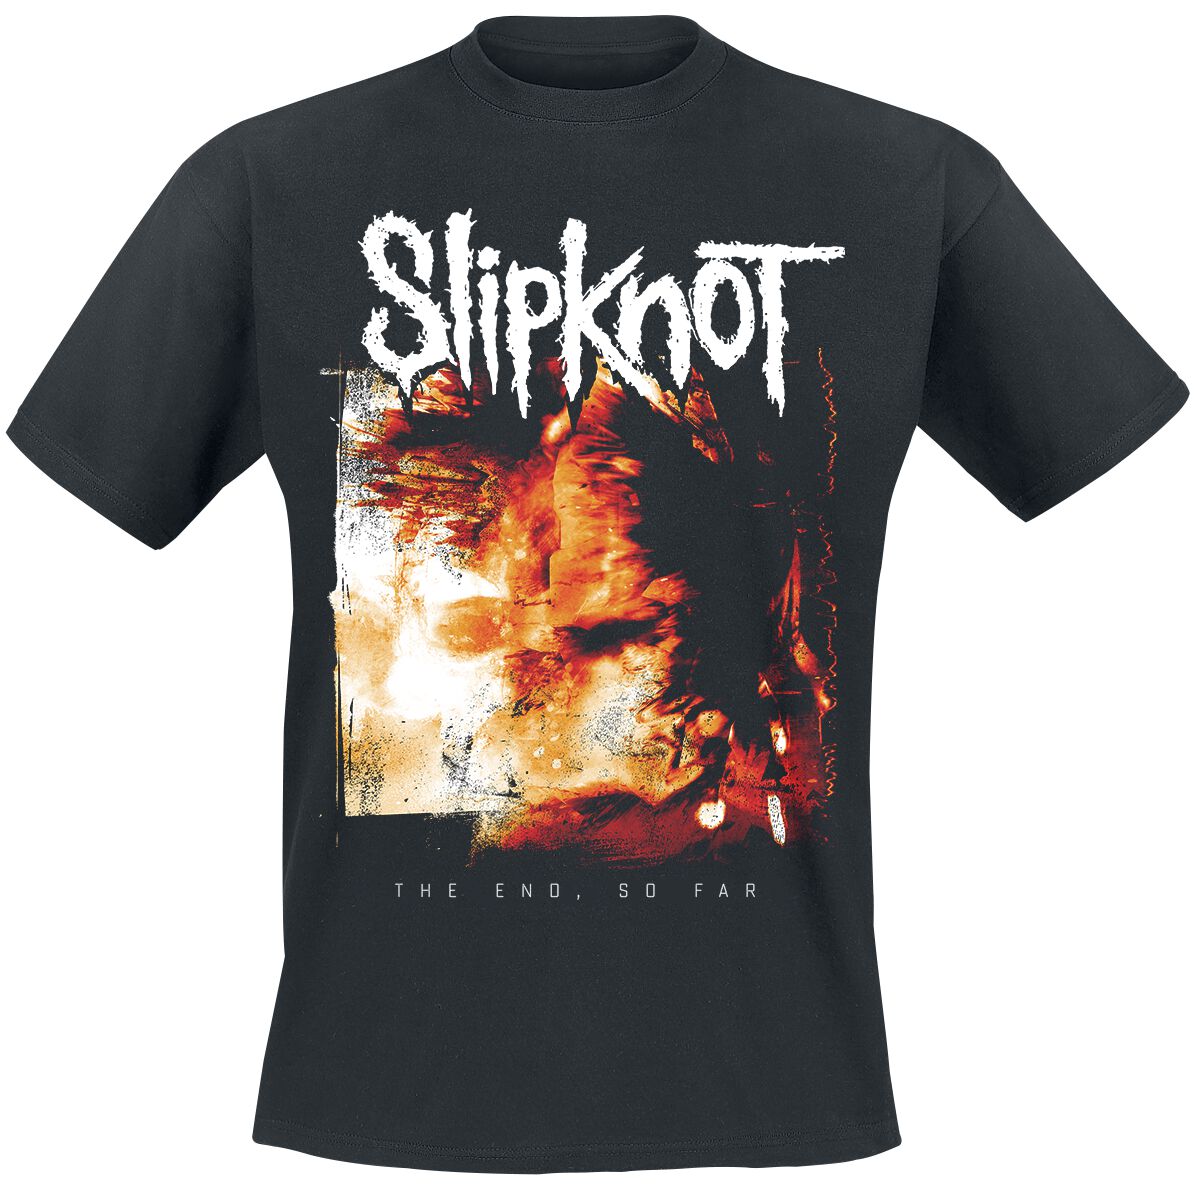 Slipknot T-Shirt - The End, So Far Cover - S bis XL - für Männer - Größe S - schwarz  - Lizenziertes Merchandise!